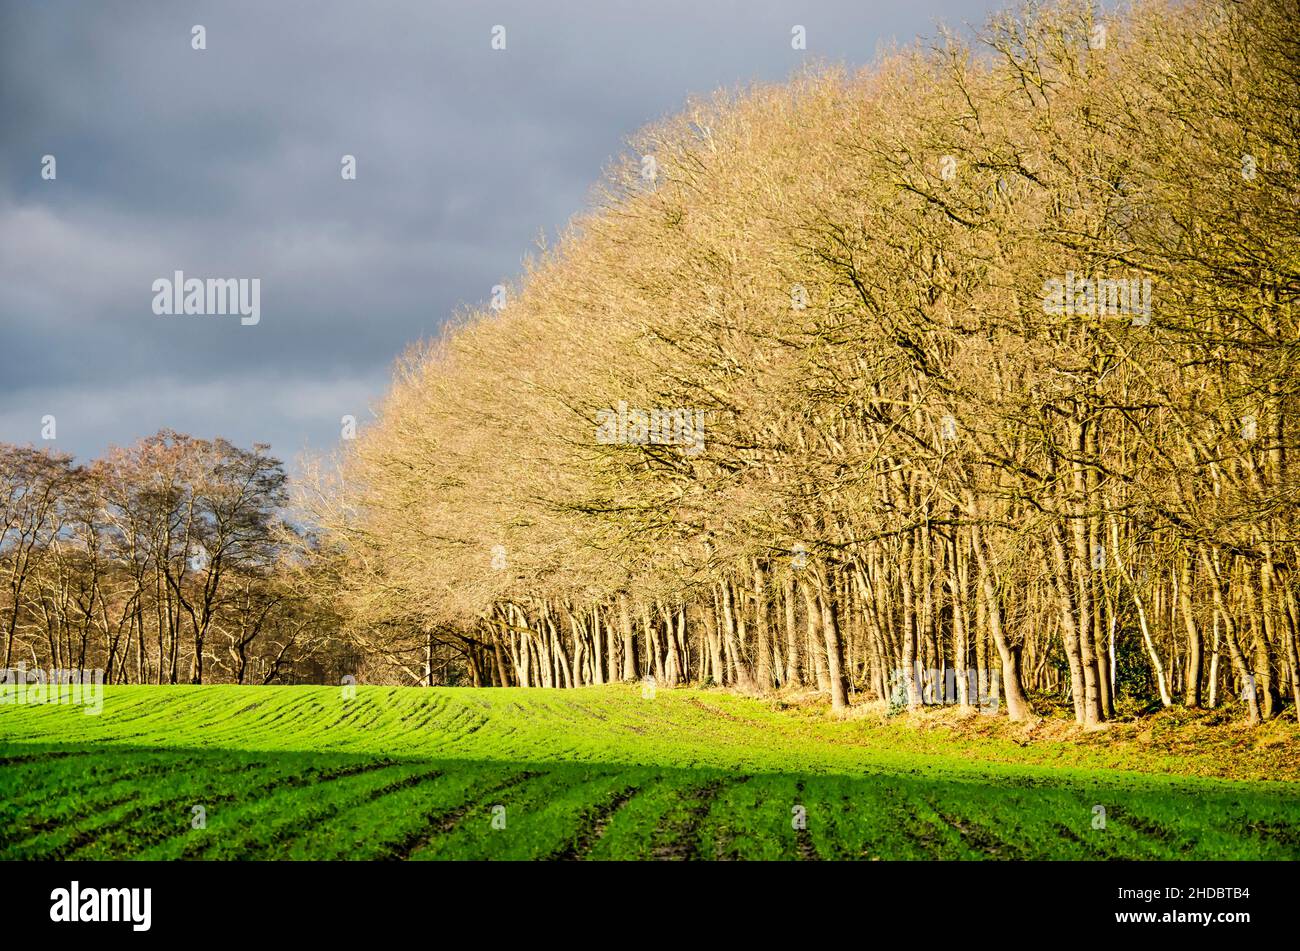 Un faible soleil illumine les arbres au bord d'une forêt près de Zuidwolde, aux pays-Bas, lors d'une journée par ailleurs nuageux en hiver Banque D'Images